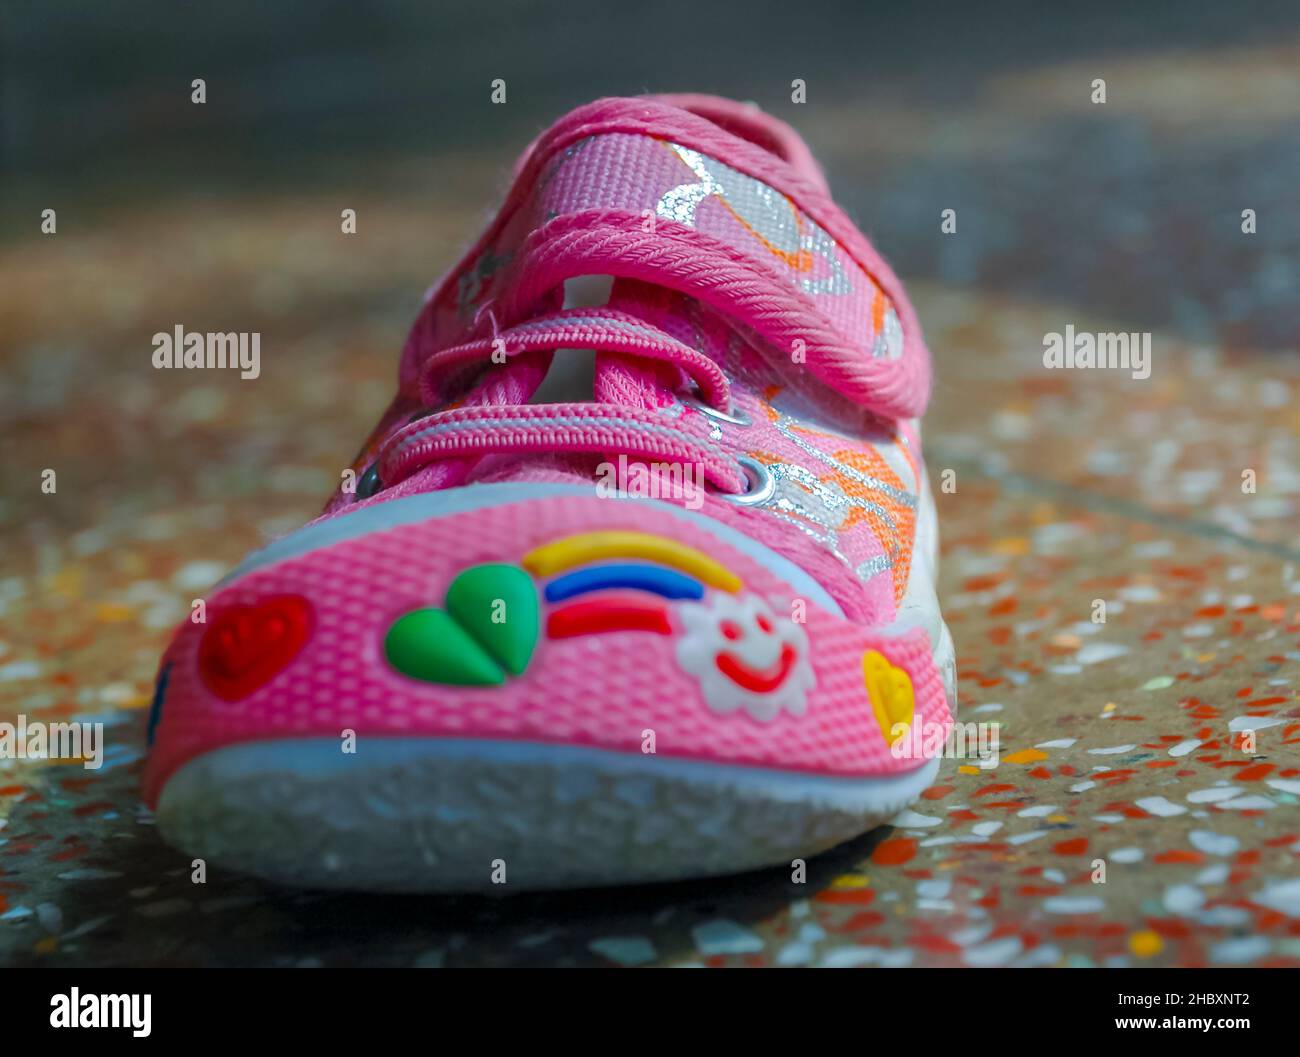 Photographie d'une petite profondeur de champ d'une chaussure décorative rose pour bébé sur un sol en béton poli. Banque D'Images